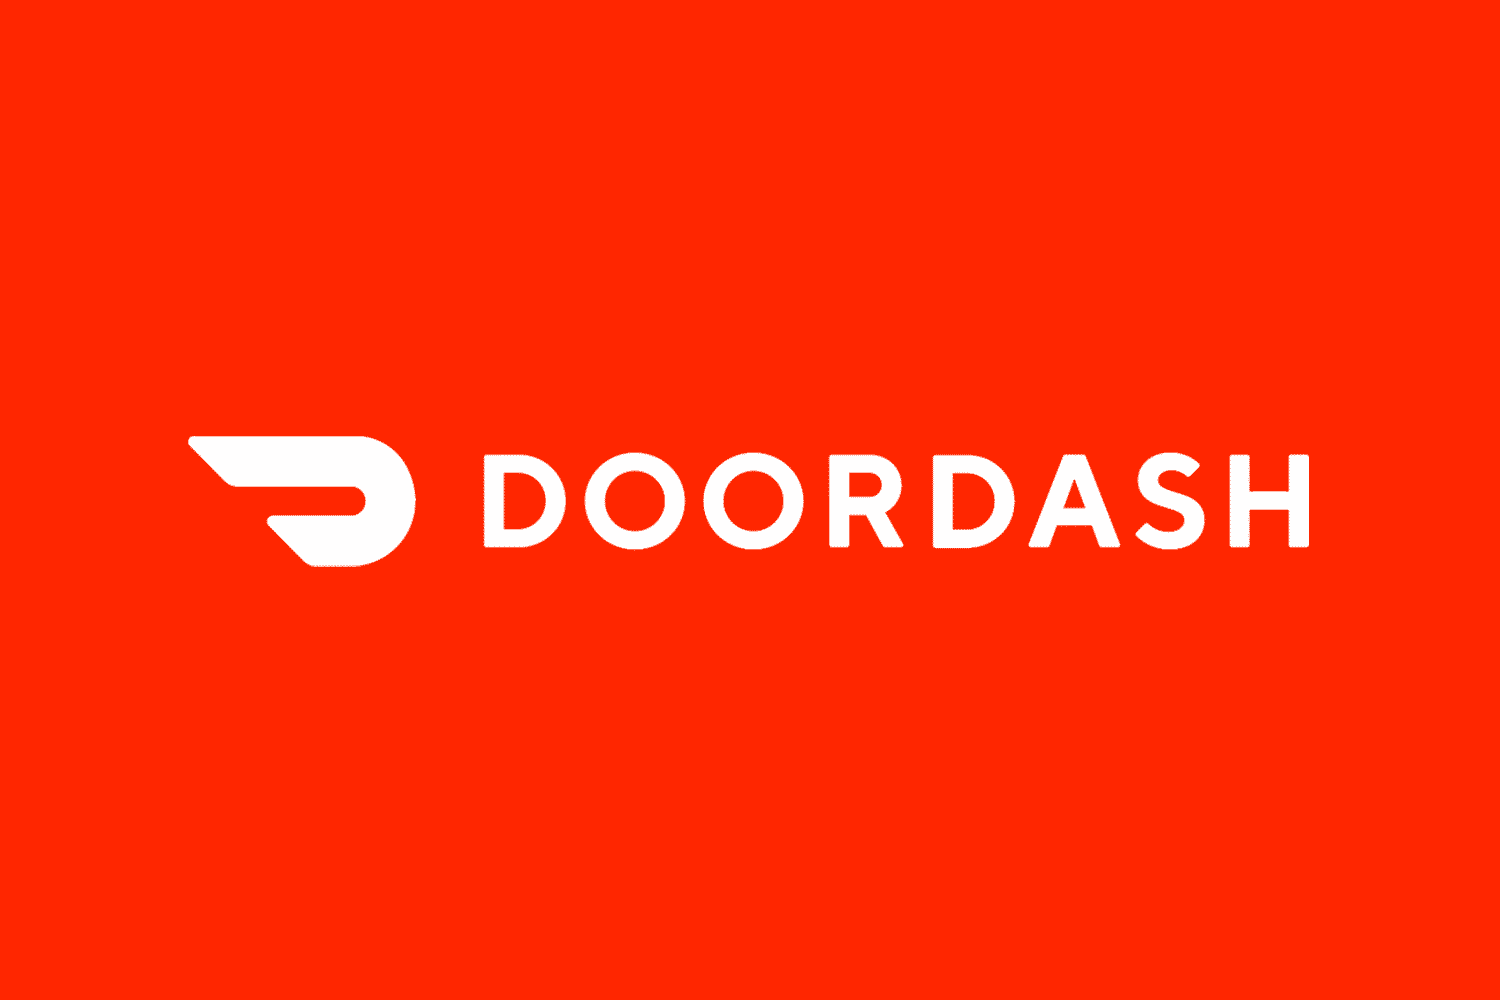 DoorDash raises $400M round, now valued at $7.1B